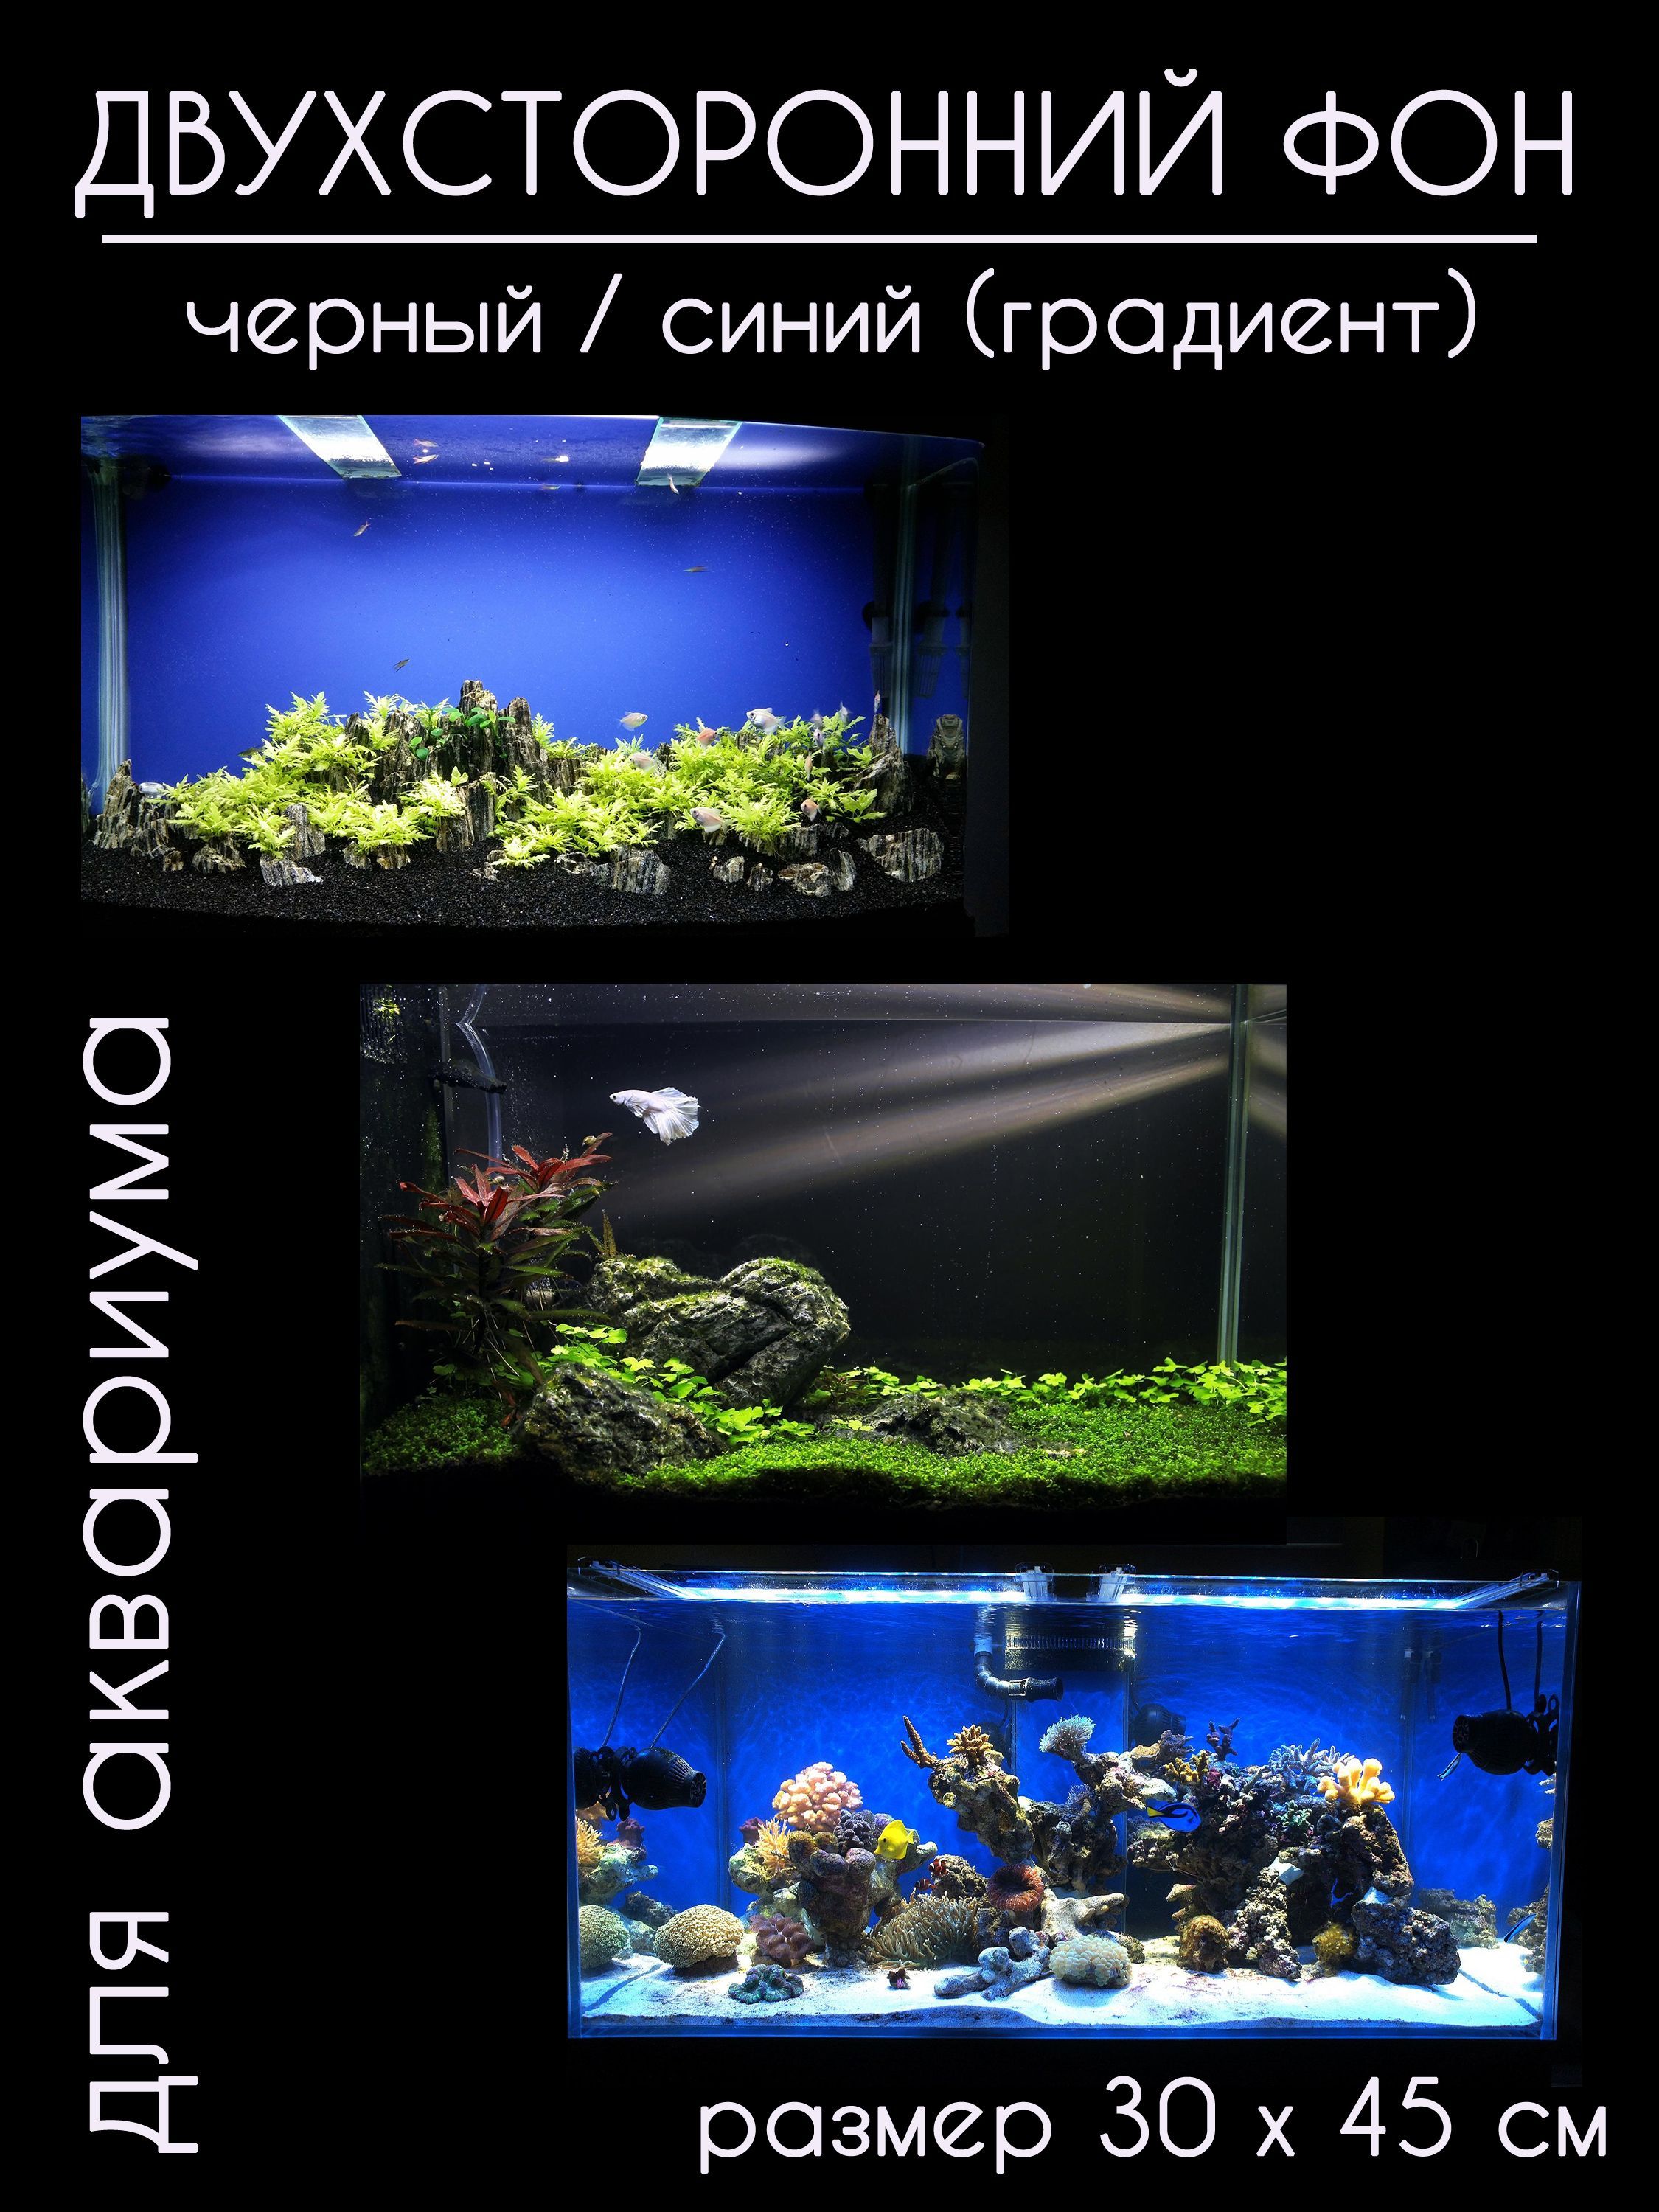 Фон из пенопласта (камни) - Нижегородский форум любителей аквариумистики